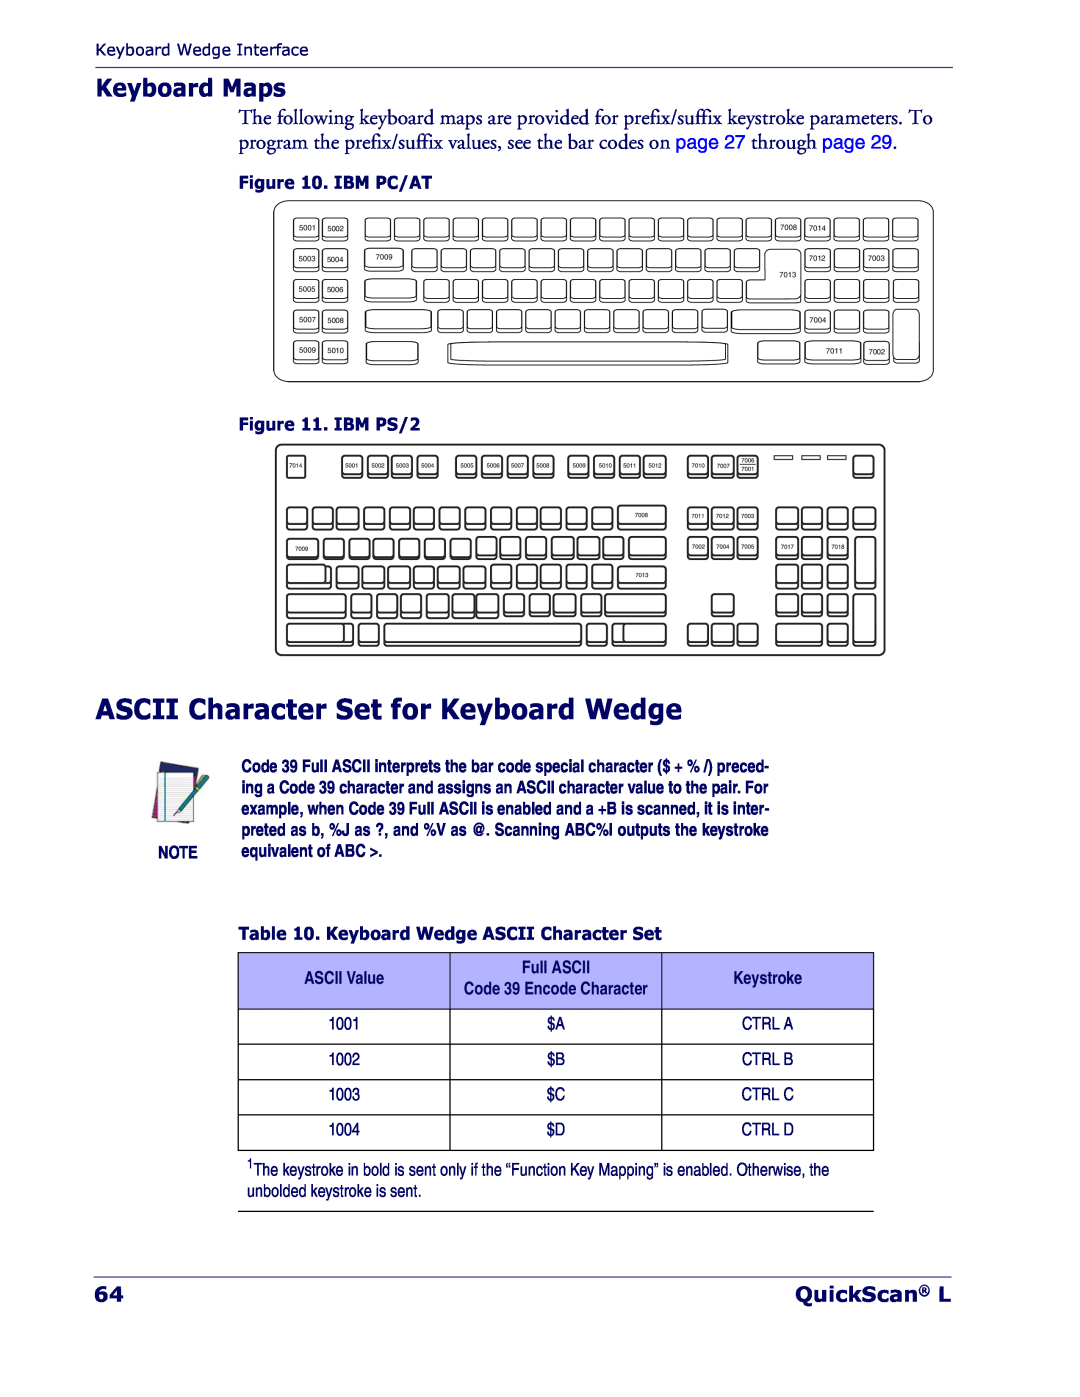 Datalogic Scanning QD 2300 manual ASCII Character Set for Keyboard Wedge, Keyboard Maps, QuickScan L, Ibm Pc/At, IBM PS/2 